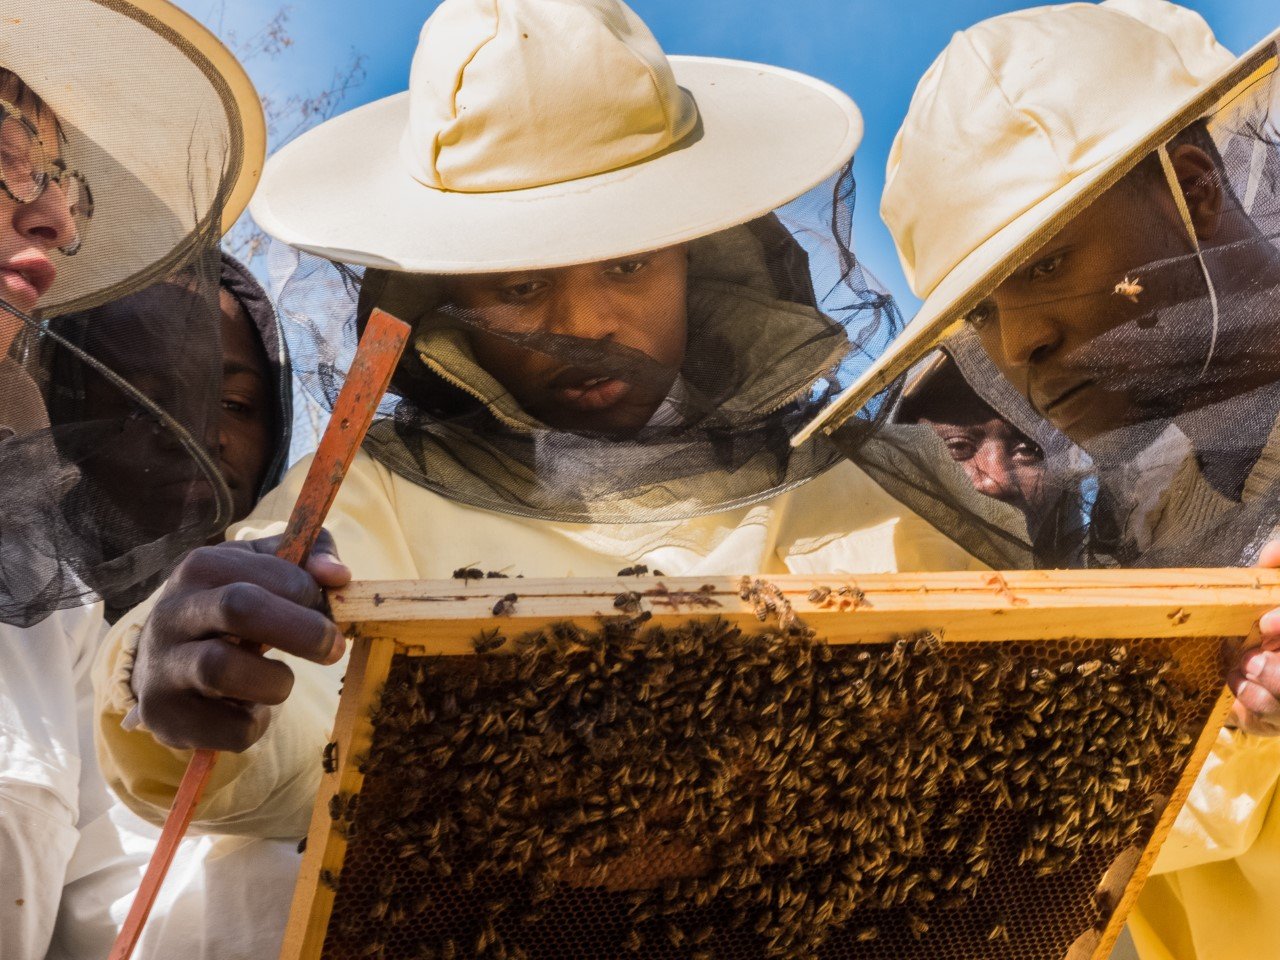 L’apicoltura come inclusione lavorativa e sociale: il progetto dell’Aps Cambalache di Alessandria